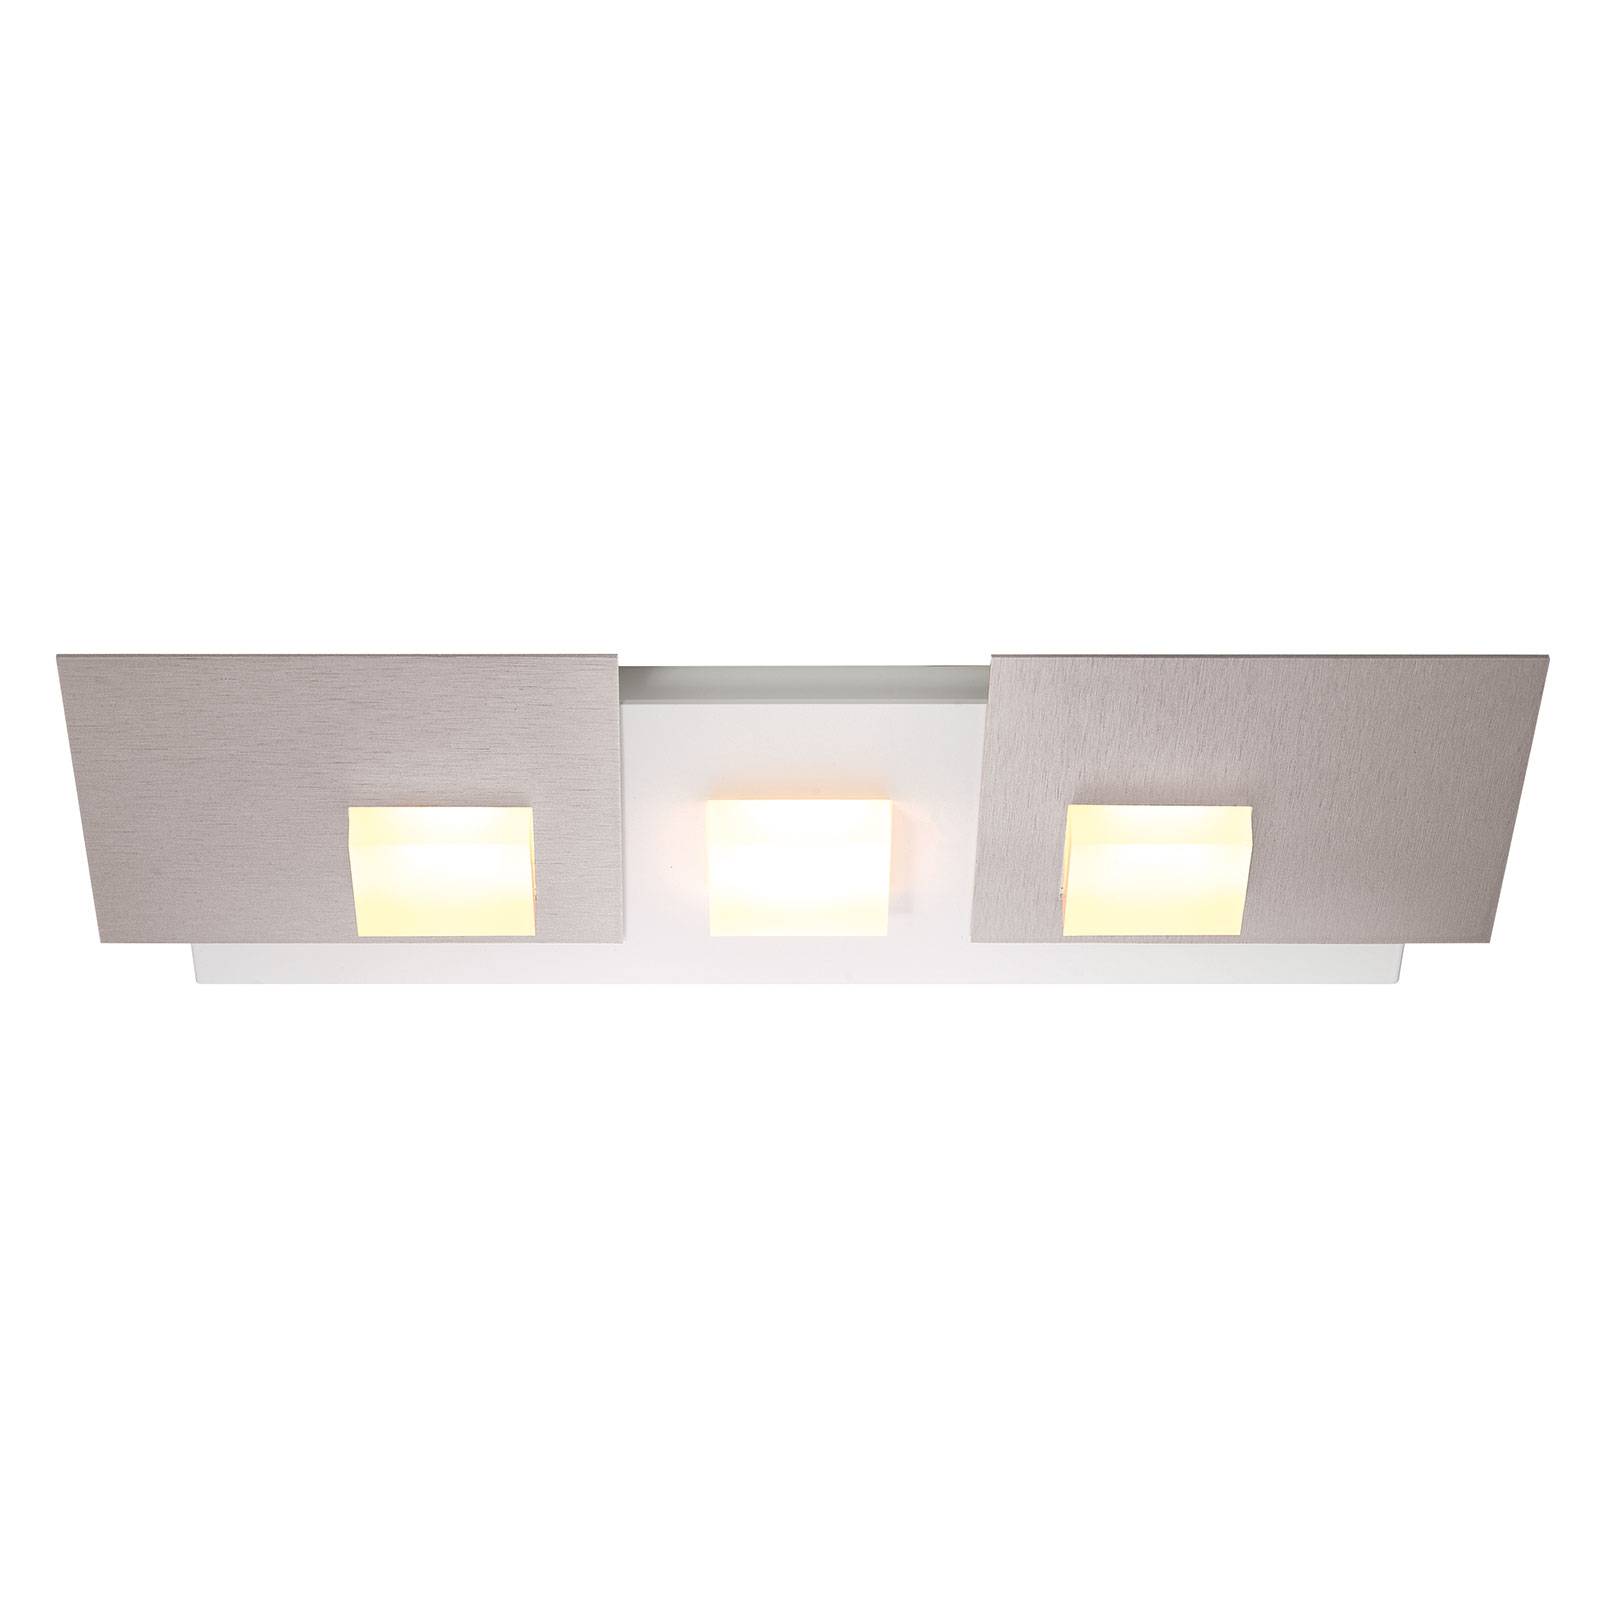 Bopp Pixel 2.0 LED ceiling light 3-bulb aluminium